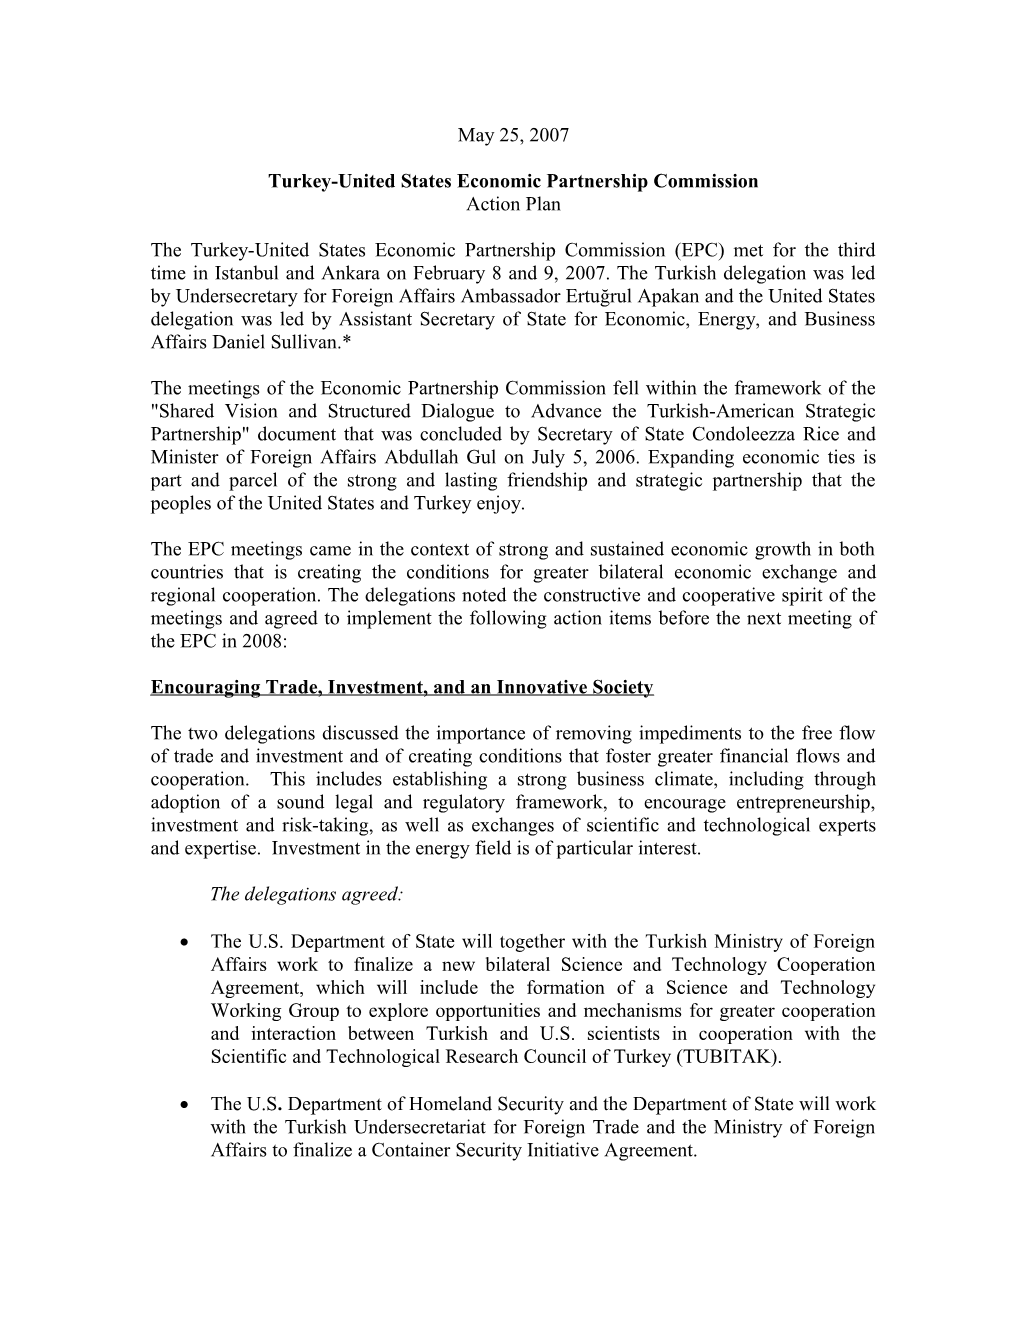 Turkey-United States Economic Partnership Commission